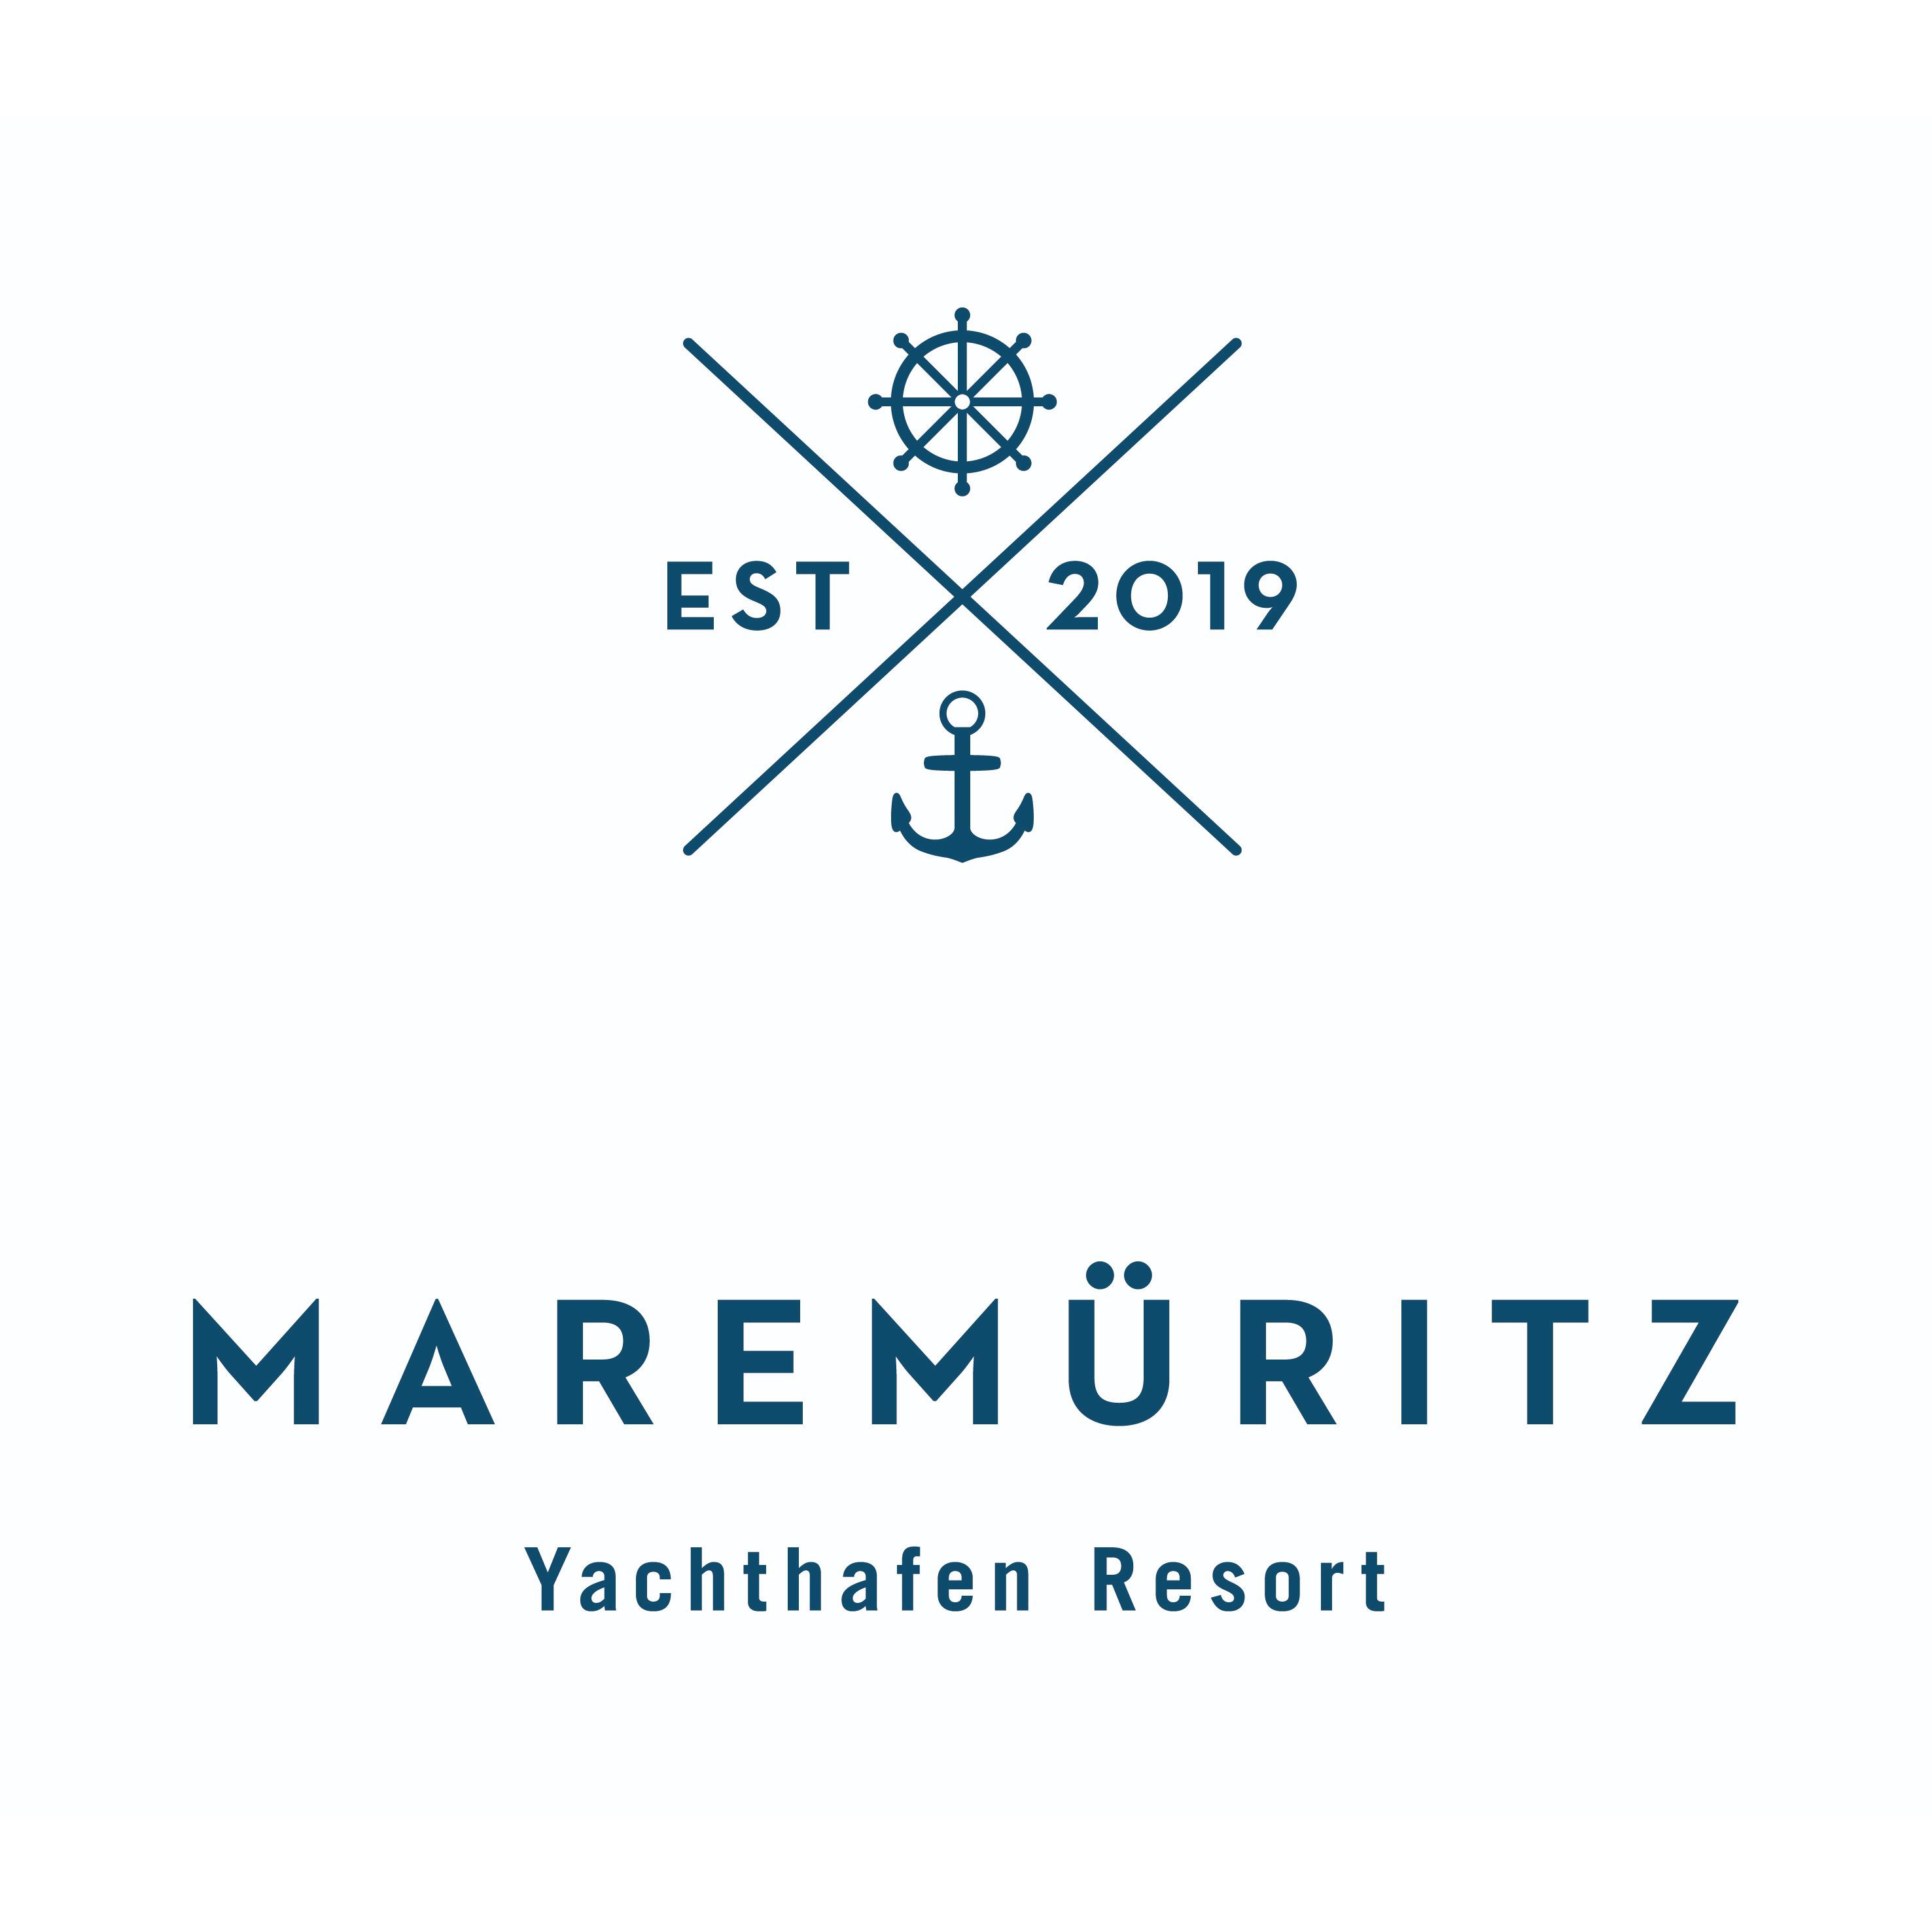 MAREMÜRITZ Yachthafen Resort in Waren (Müritz)